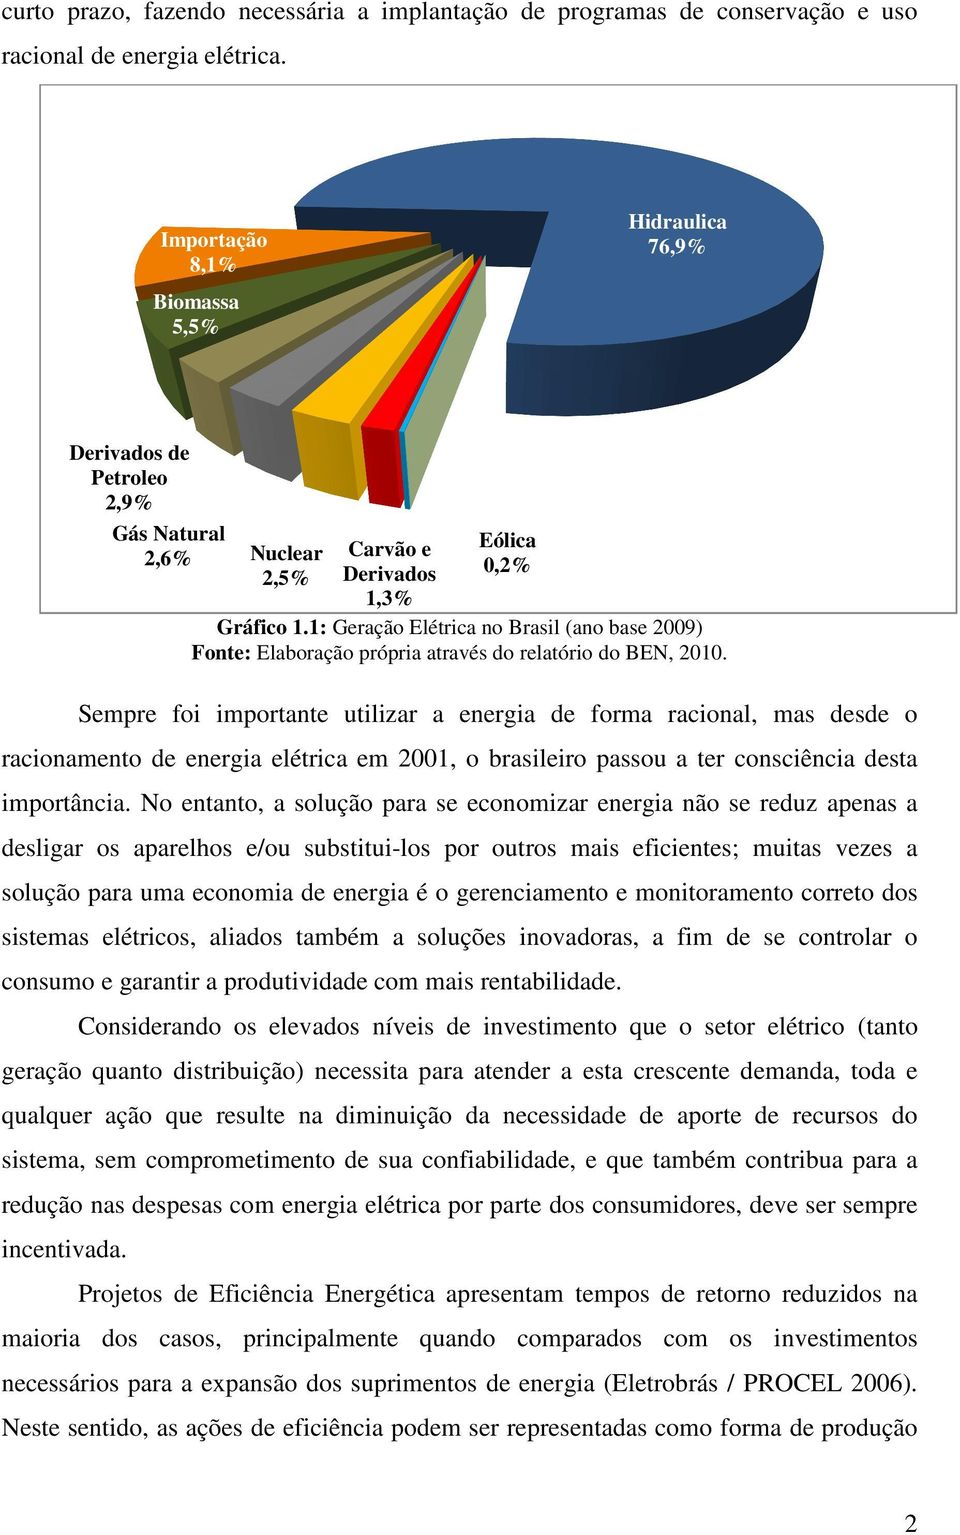 Sempre foi importante utilizar a energia de forma racional, mas desde o racionamento de energia elétrica em 2001, o brasileiro passou a ter consciência desta importância.